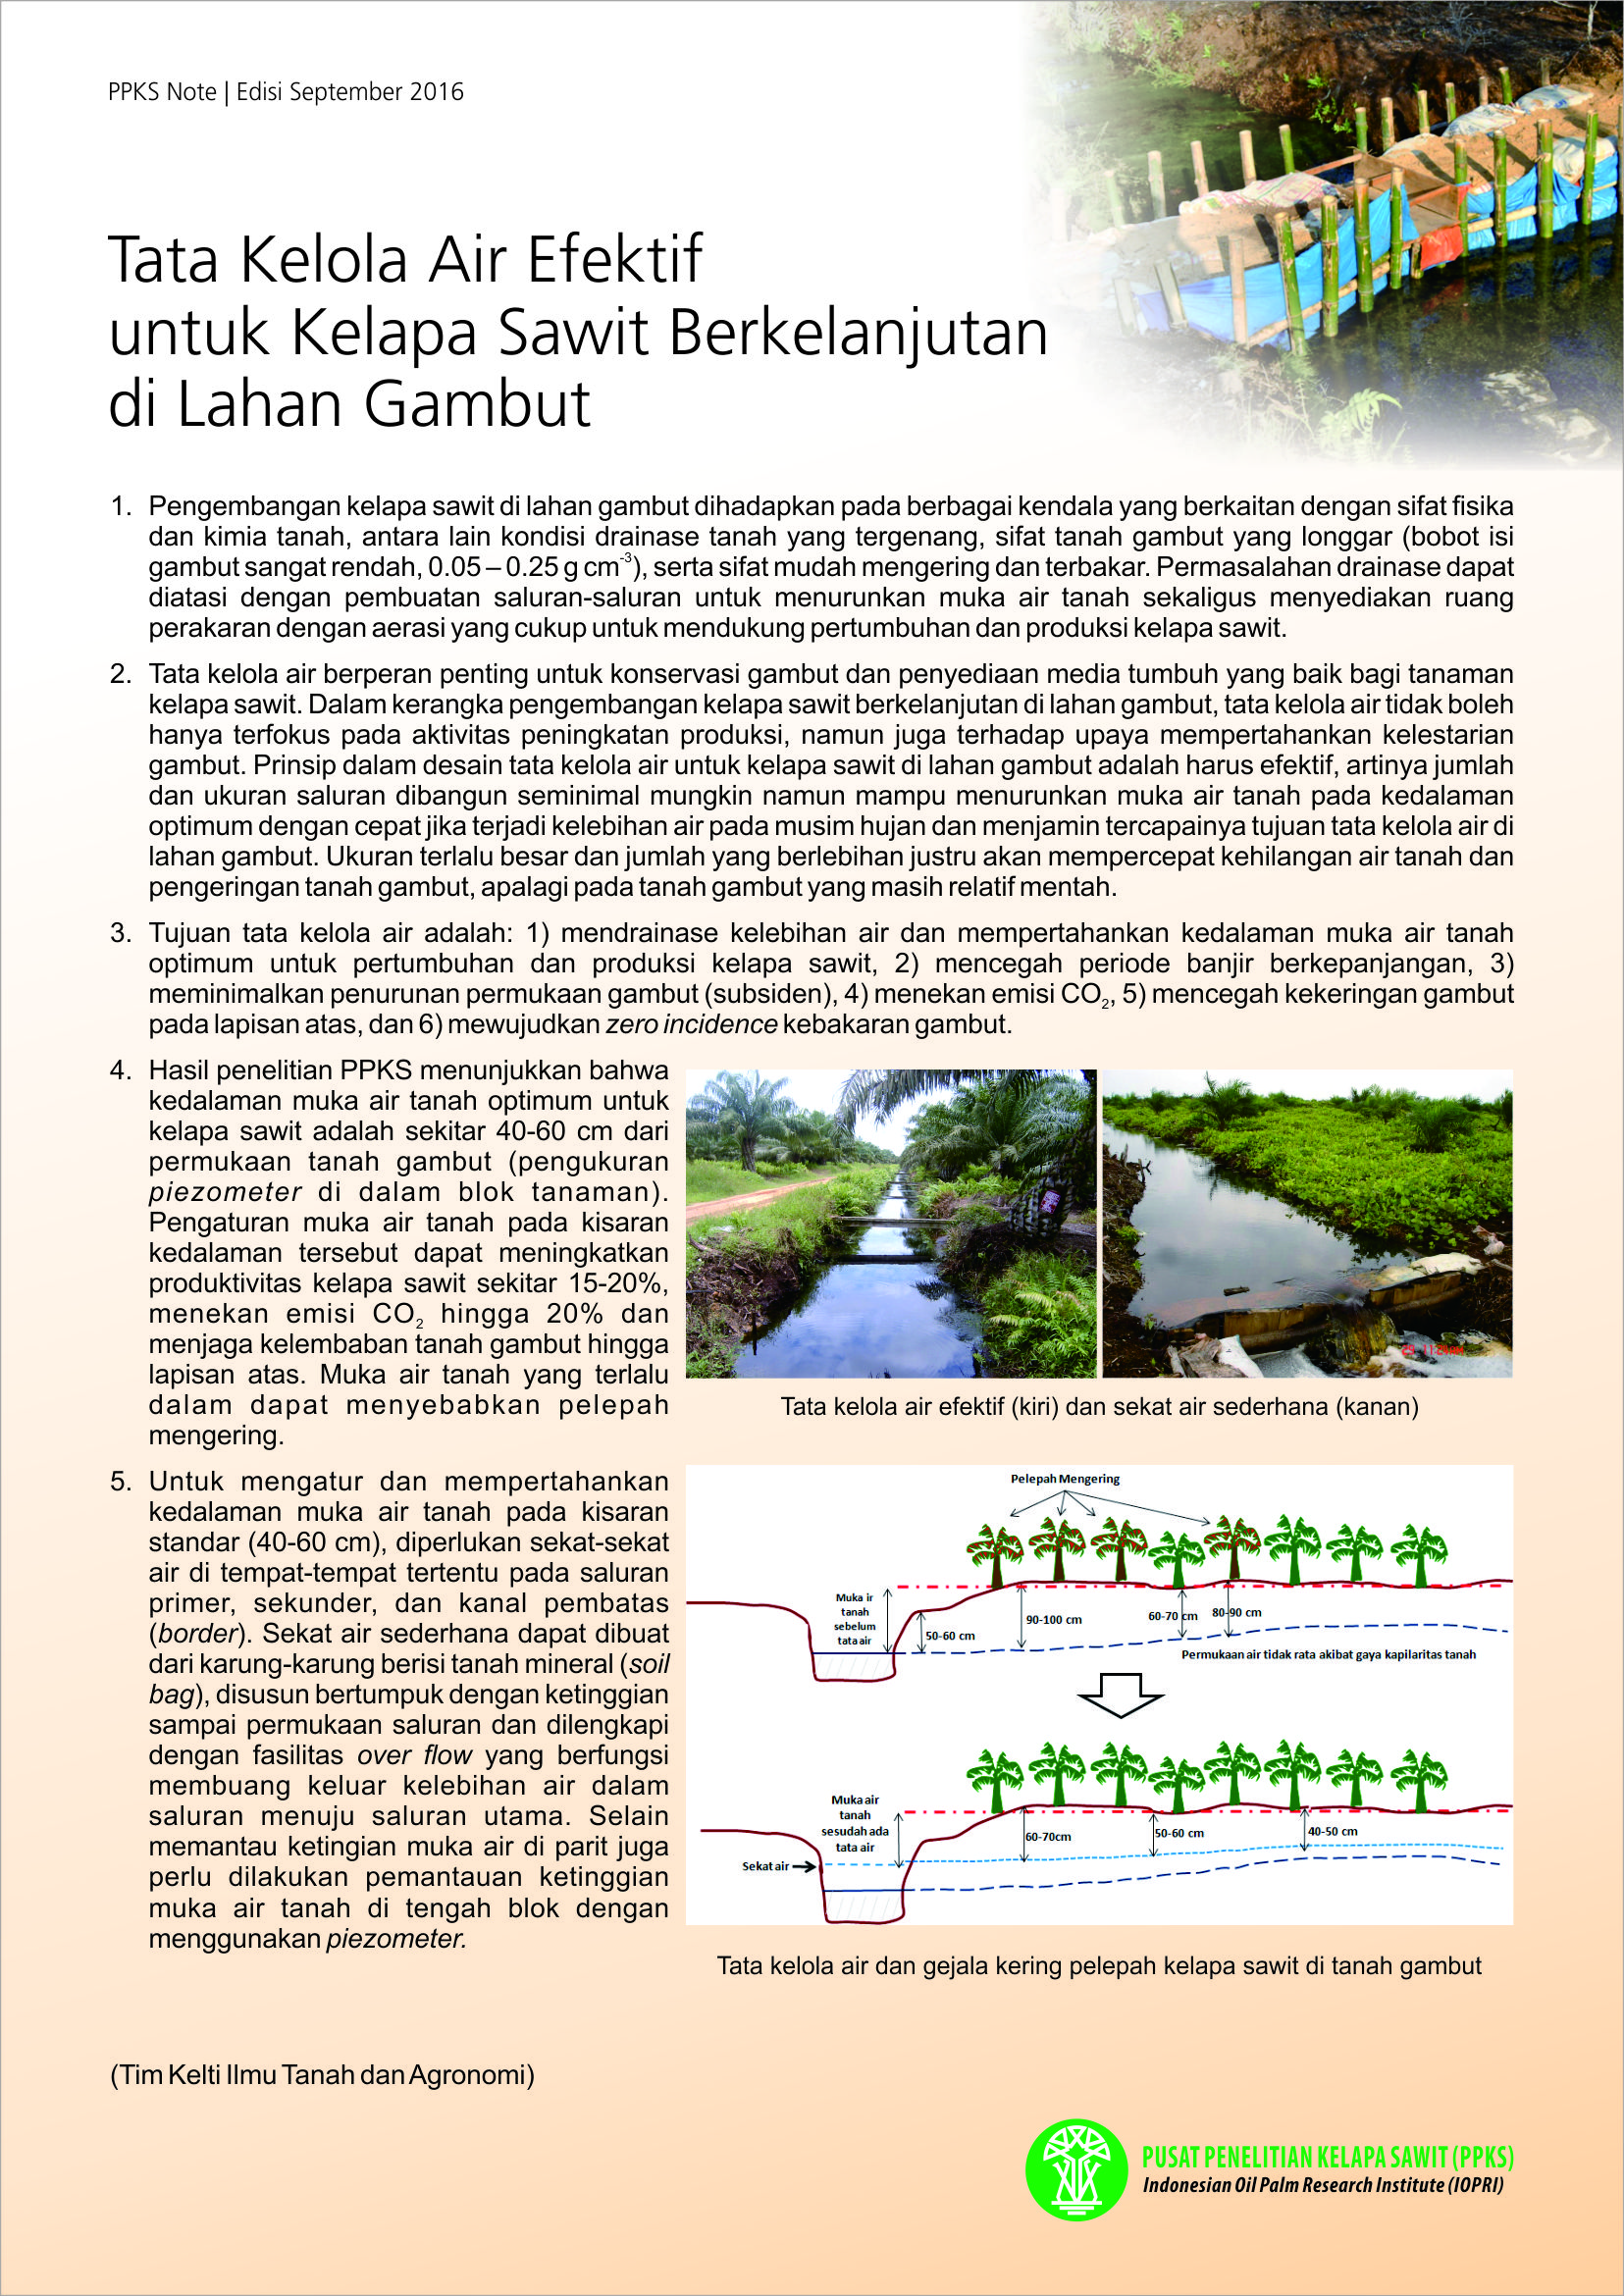 EDISI SEPTEMBER 2016 - Tata Kelola Air Efektif untuk Kelapa Sawit Berkelanjutan di Lahan Gambut